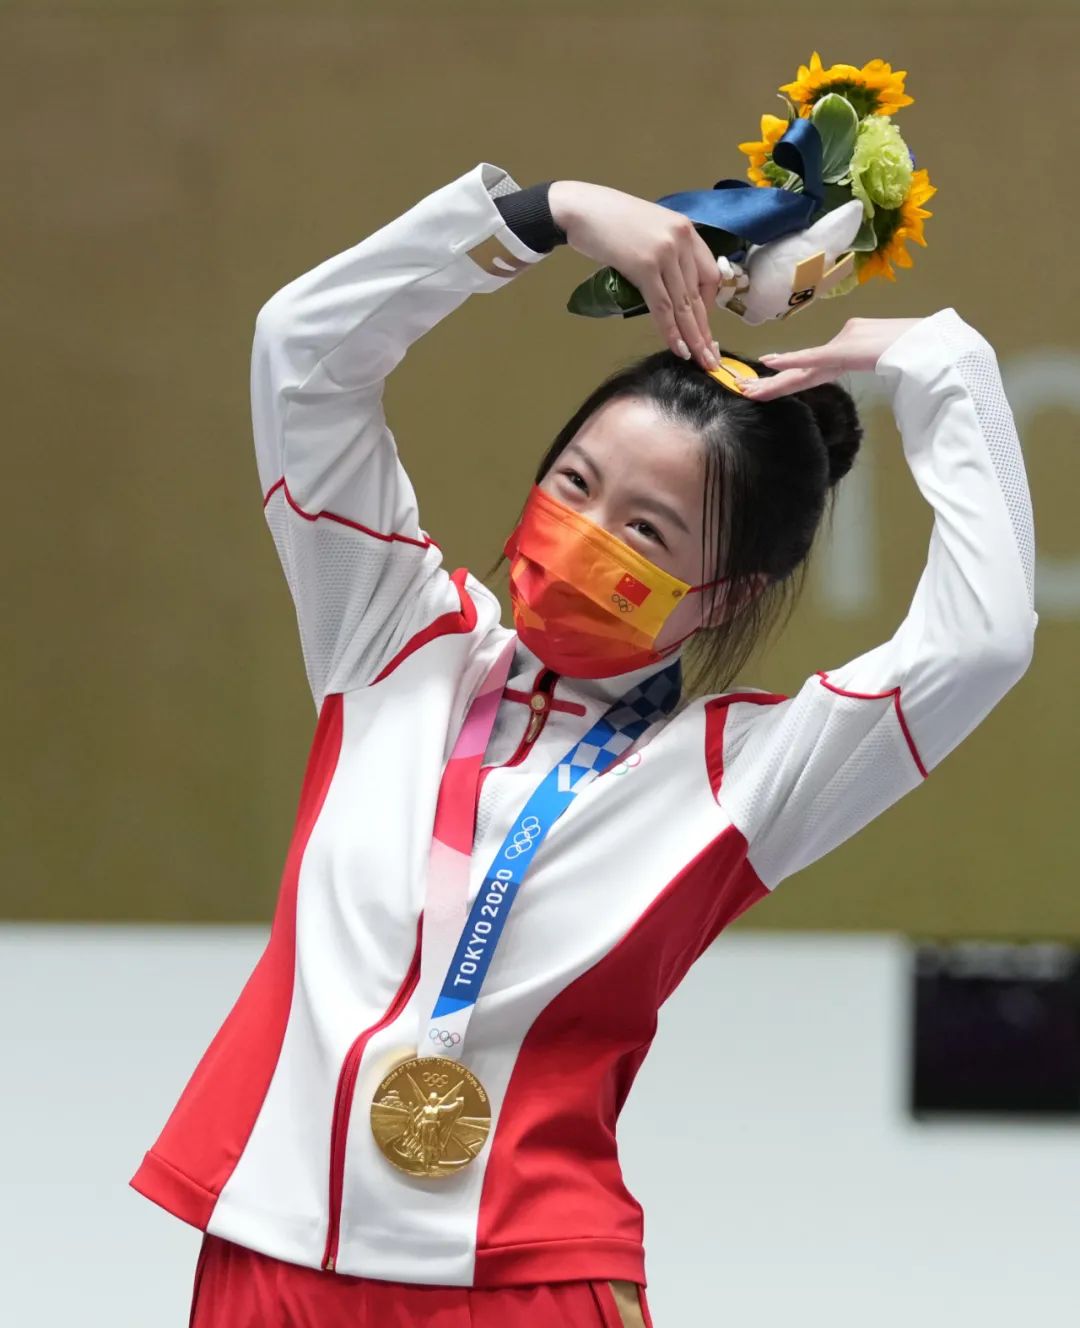 中国“00后”选手杨倩夺得本届奥运首金。